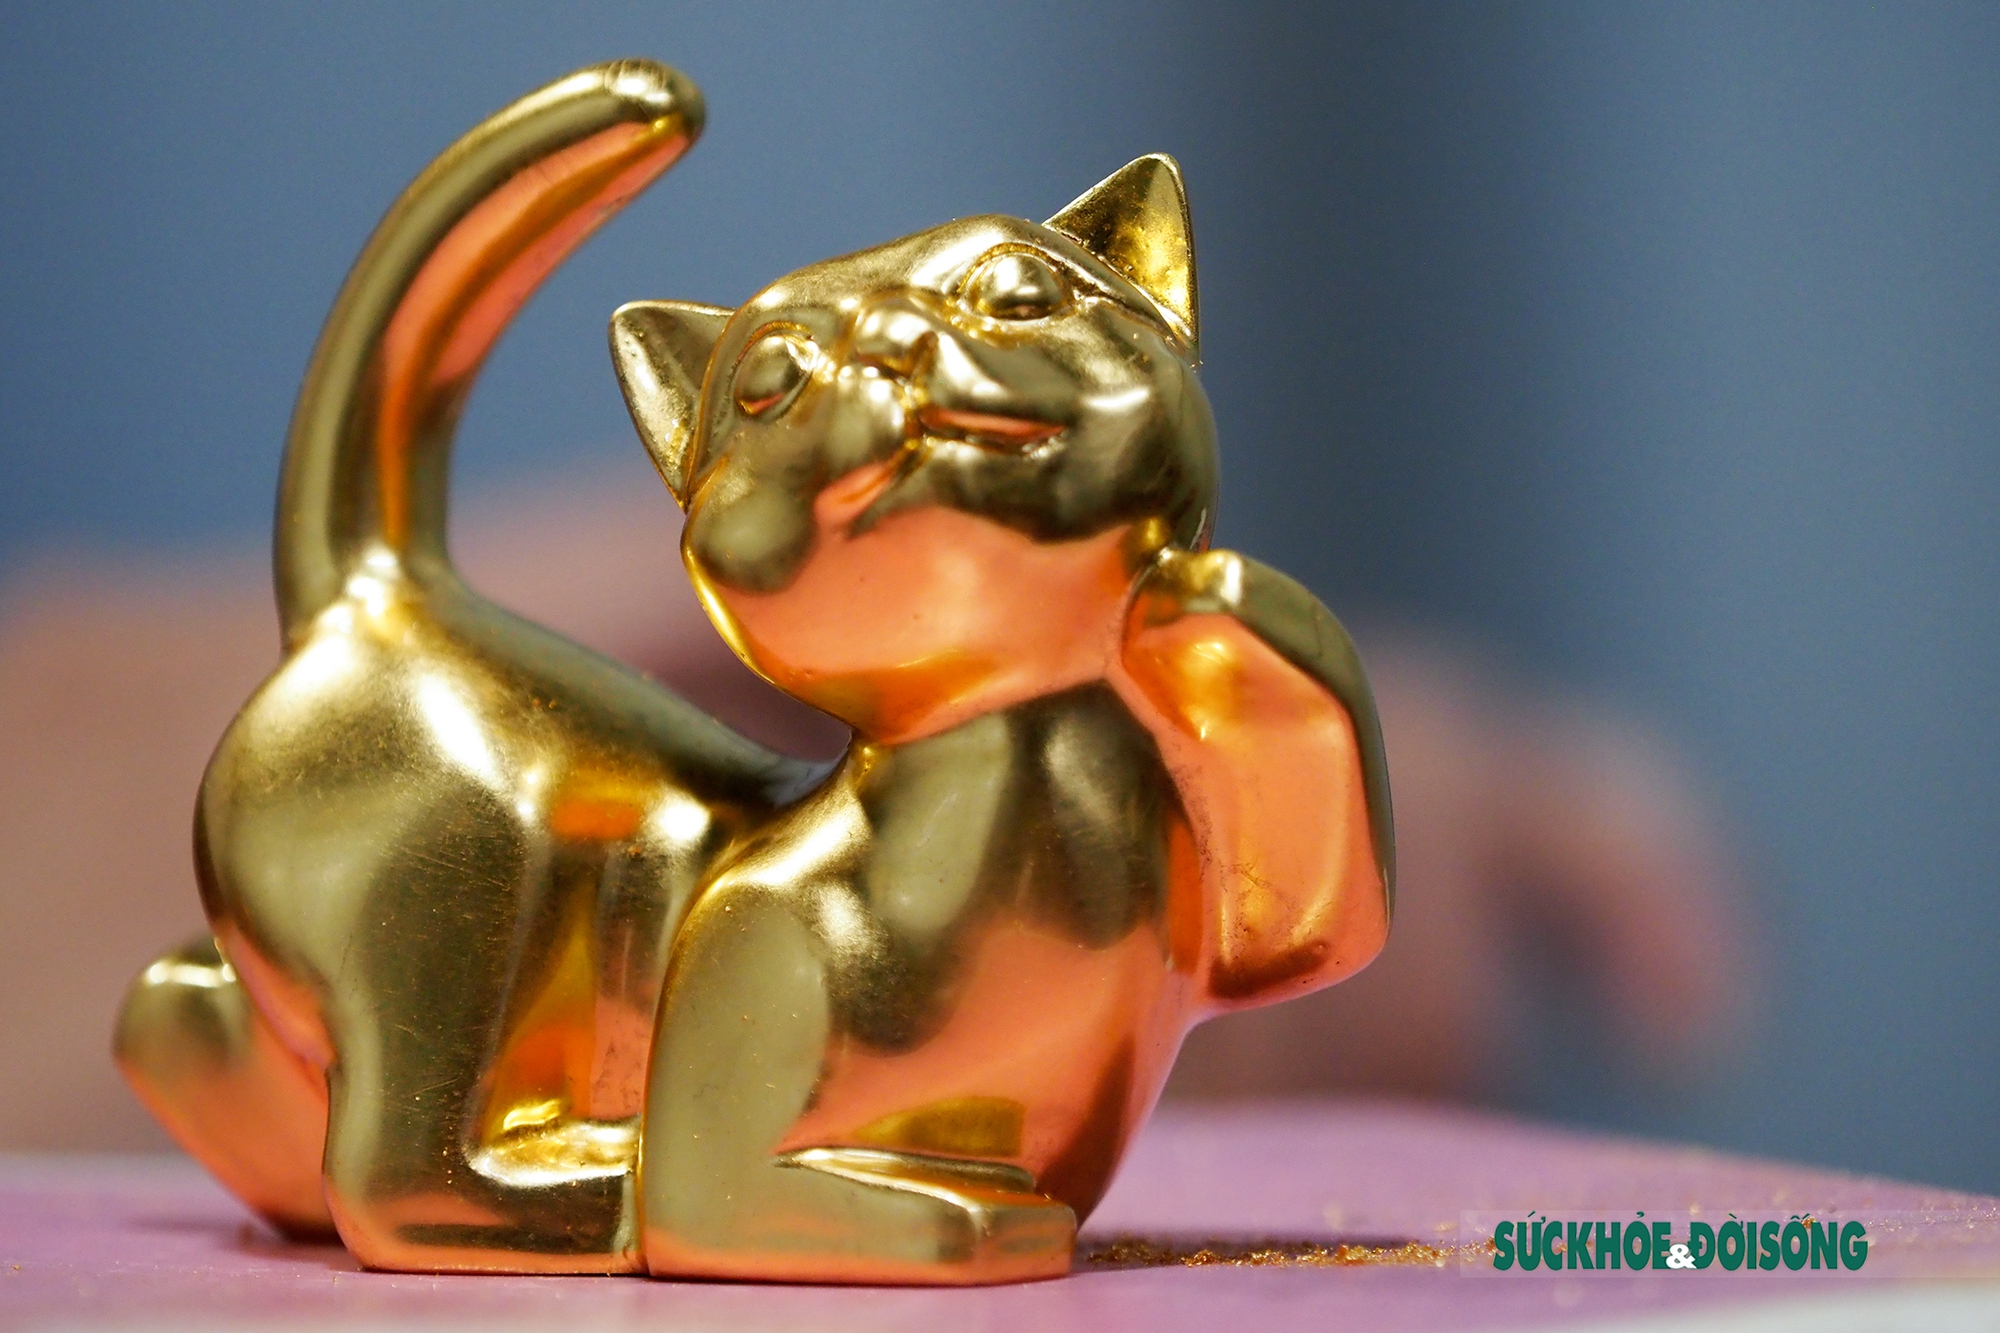 Mèo mạ vàng trưng tết đã trở thành một trong những hình ảnh phổ biến nhất trong dịp Tết Nguyên Đán. Mèo trở thành biểu tượng linh vật của tết, mang đến sự may mắn, tài lộc và tình cảm gia đình. Hãy cùng ngắm nhìn mèo mạ vàng rực rỡ trên những sản phẩm trang trí tết nhé!